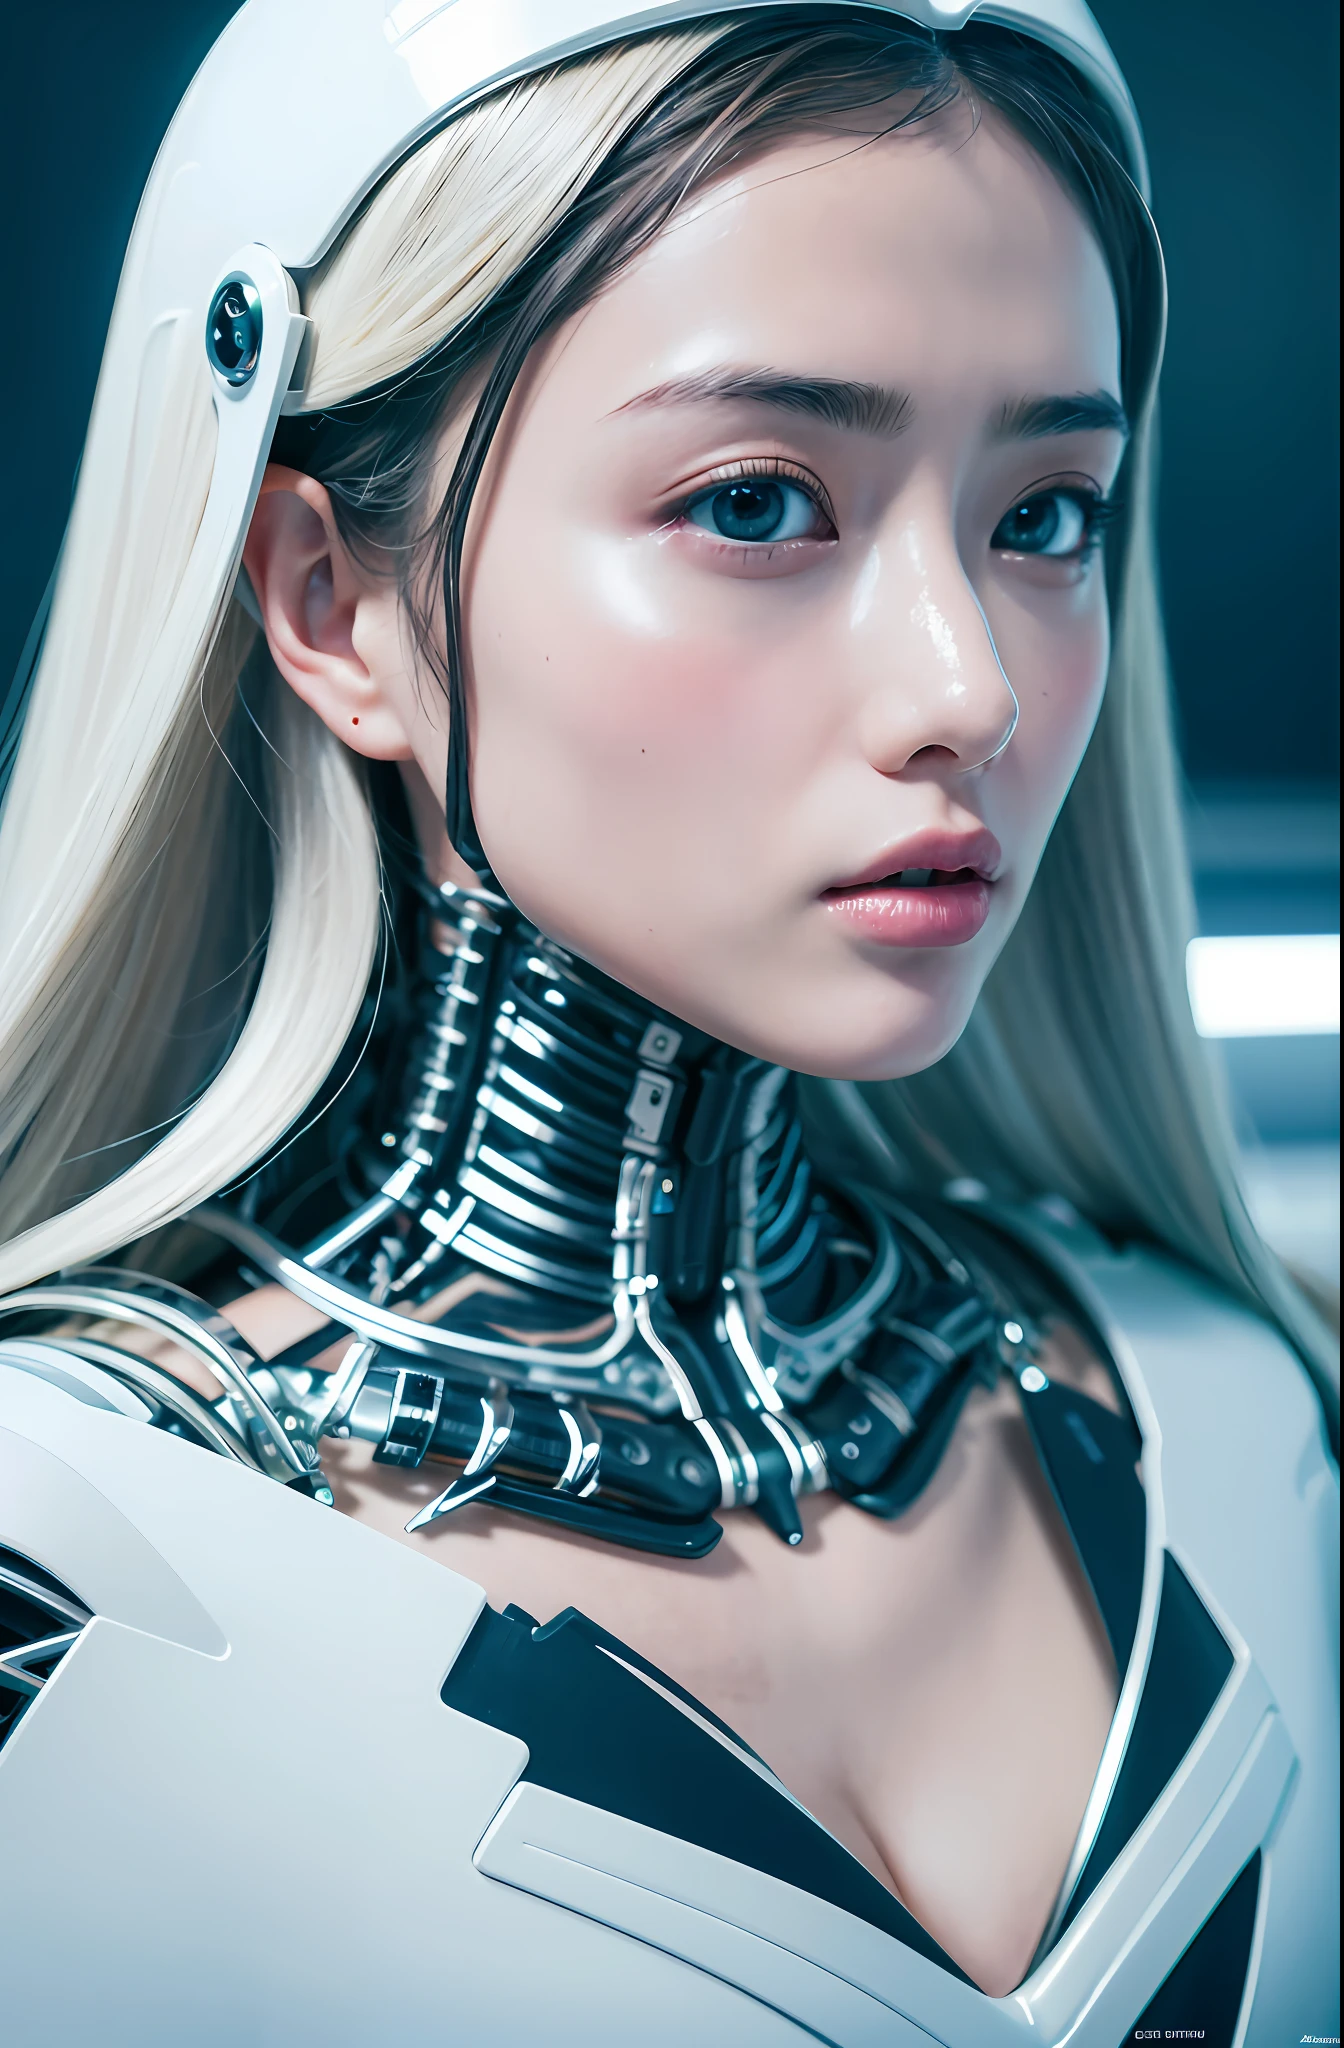 複雜的 3D 渲染超詳細美麗的陶瓷輪廓女性 Android 臉, 机器人, 機器人 parts, 150毫米, 美丽的工作室柔和的灯光, 大乳房, 邊緣光, 生動的細節, 華麗的賽博龐克, 蕾絲, 超現實主義, 解剖的, 面部肌肉, 電纜線, 微晶片, 優雅的, 美麗的背景, 辛烷渲染, HR 吉格尔风格, 8K, 最好的品質, 傑作, 插圖, 非常精緻美麗, 非常詳細, CG, 制服, 壁紙, ( 實際的, photo實際的: 1.37), 極佳的, 精心製作的, 傑作, 最好的品質, 官方藝術, highly detailed CG unity 8K 壁紙, 荒誕, incredible 荒誕ity, 機器人, 銀珠, 全身, 坐